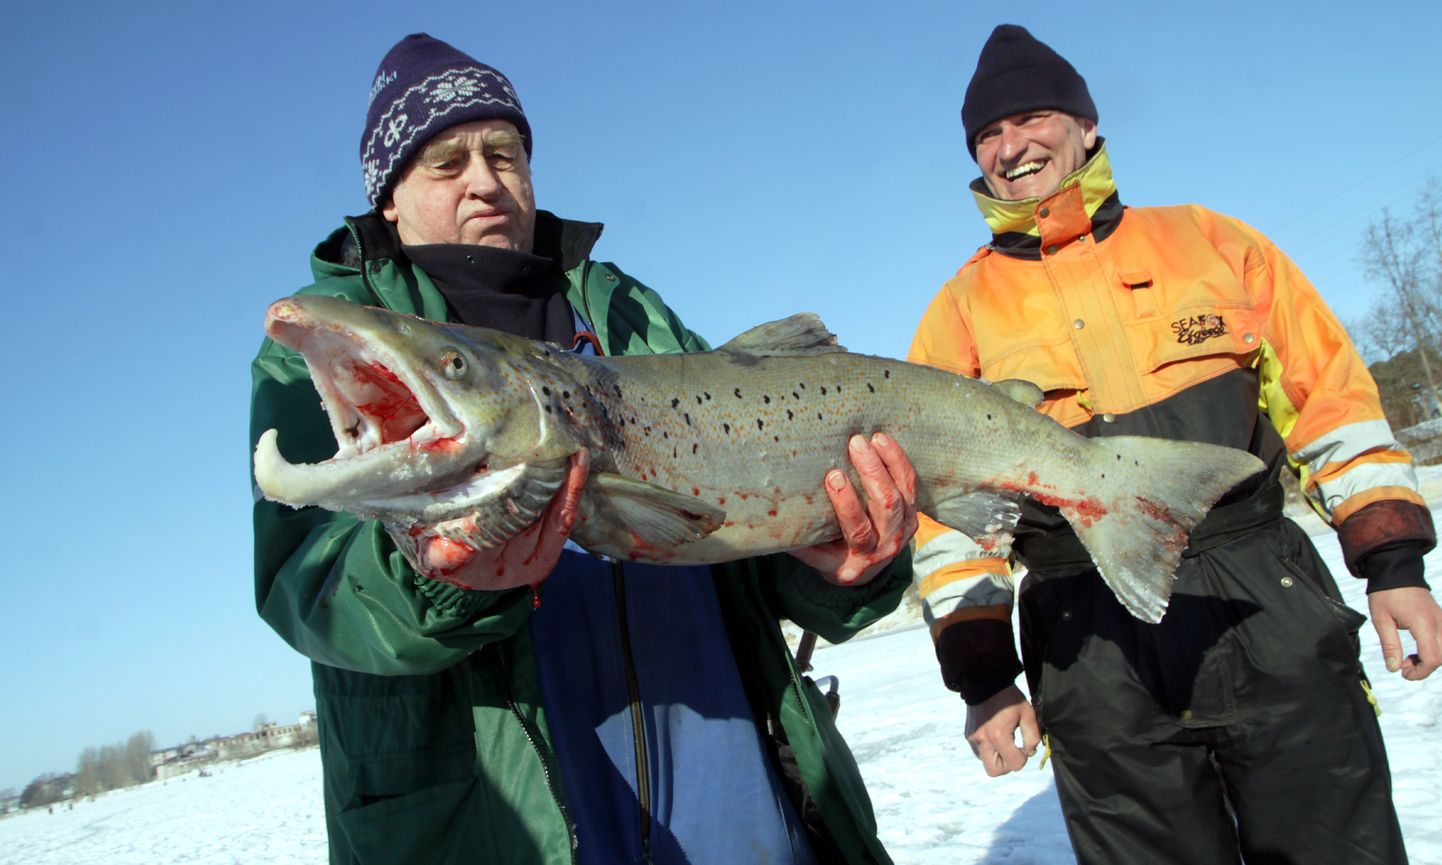 Türi mees Enn Hirv sikutas Pärnu jõest välja piraka lõhe. Suurt kala jääaugust välja tõmmata aidanud pärnakas Harri Sild takseerib uhket isendit kõrvalt.